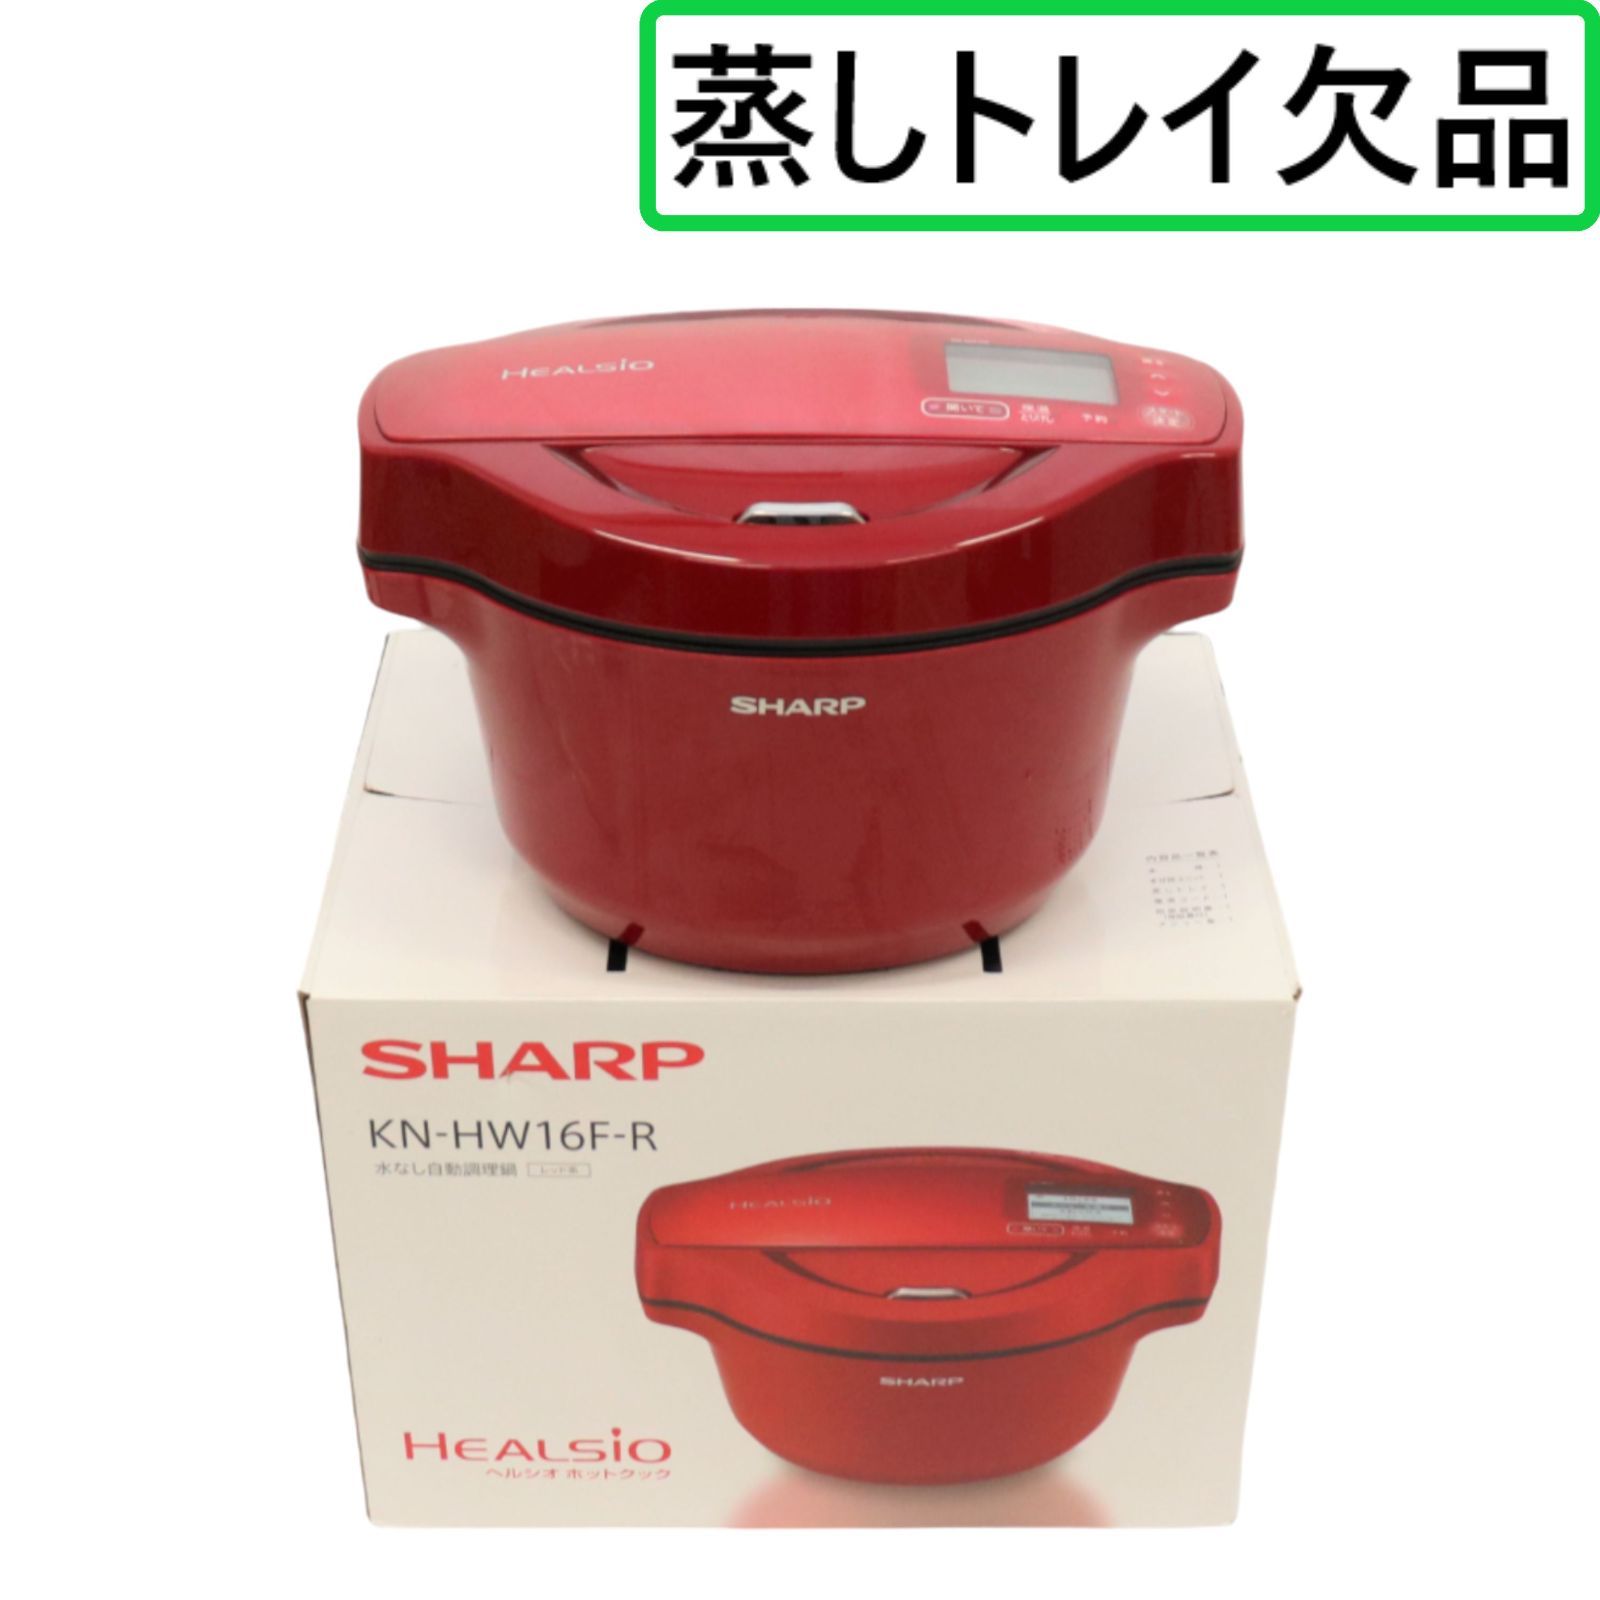 日本公式品 シャープ SHARP 水なし自動調理鍋 1.6L HEALSIO ホワイト系